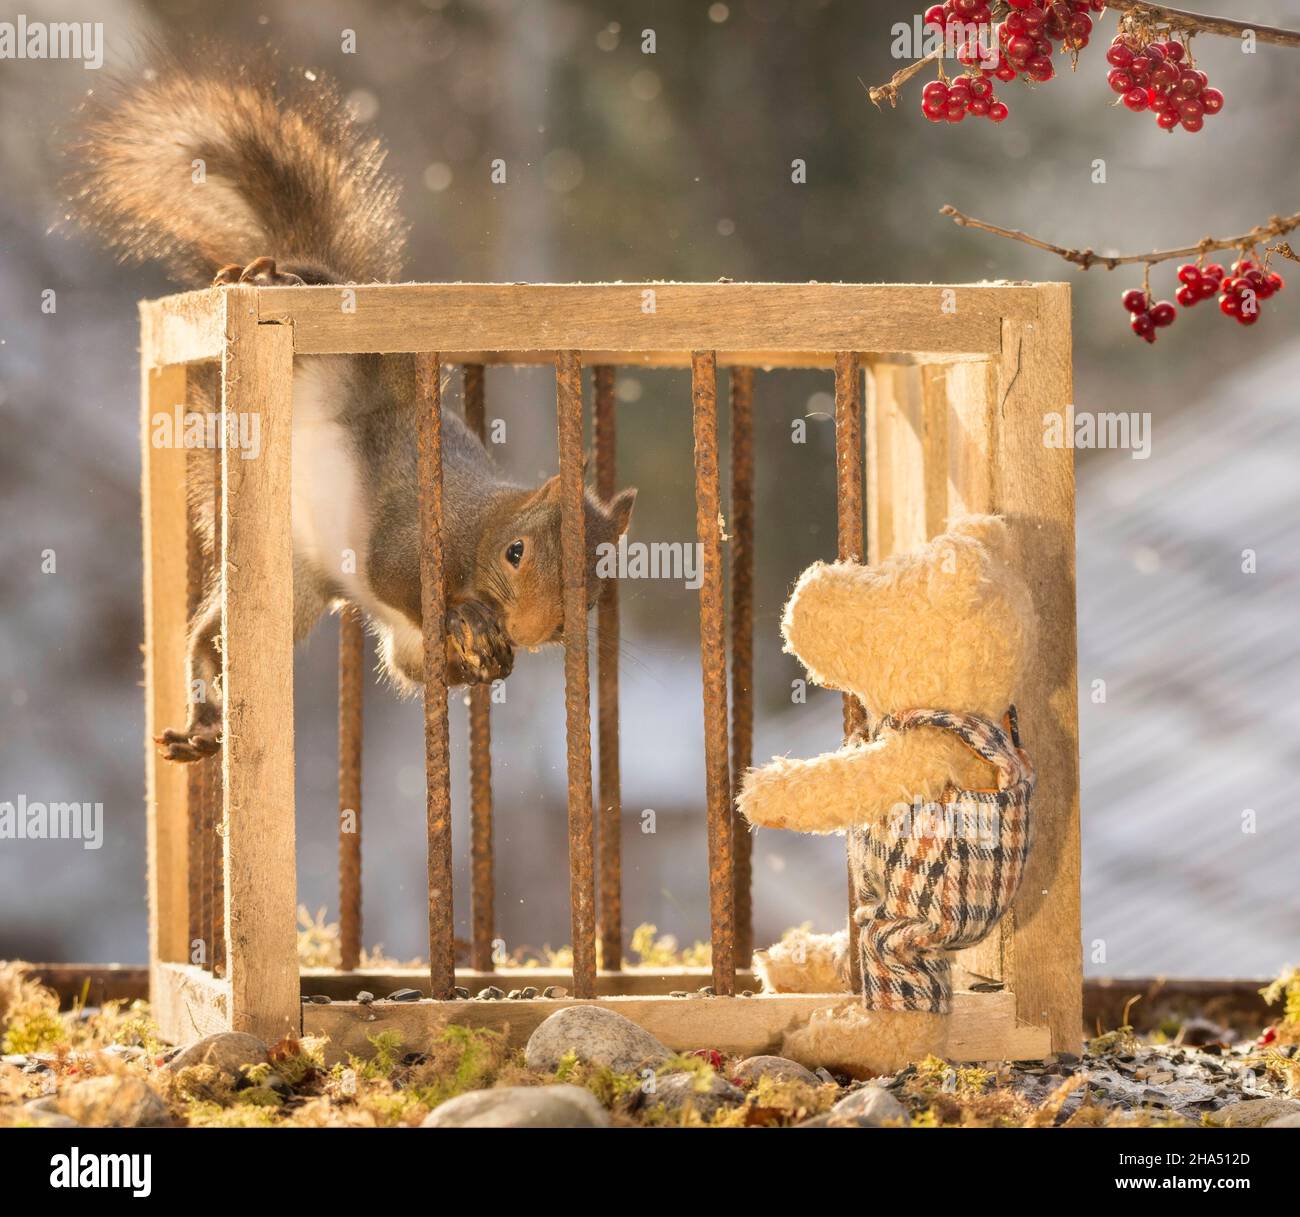 Rote Eichhörnchen, die hinter Gittern stehen, während ein Bär beim Schneefall zuschaut Stockfoto